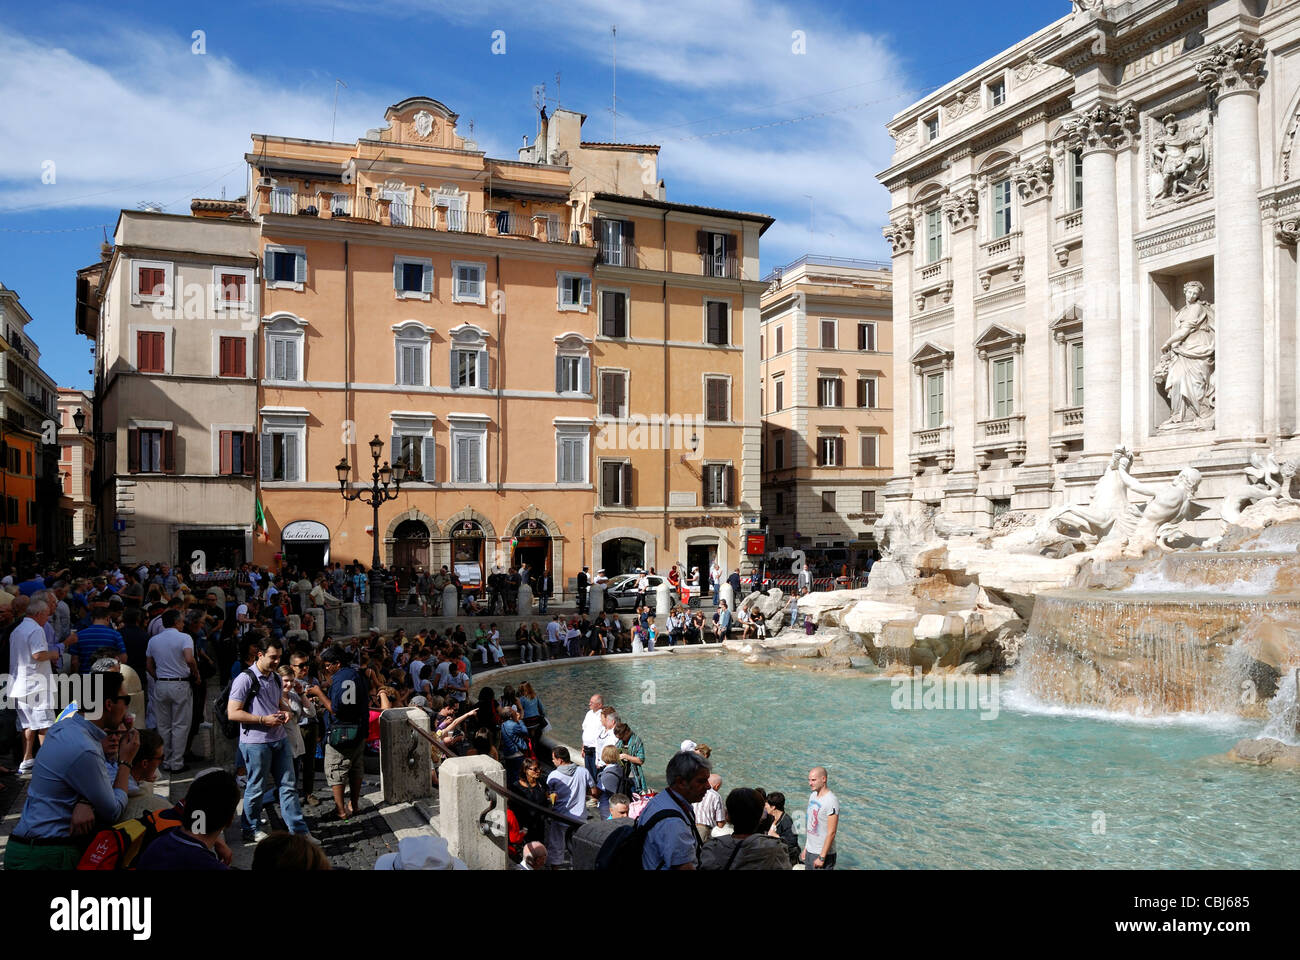 Trevi Fountain at Piazza di Trevi in Rome - Fontana di Trevi. Stock Photo